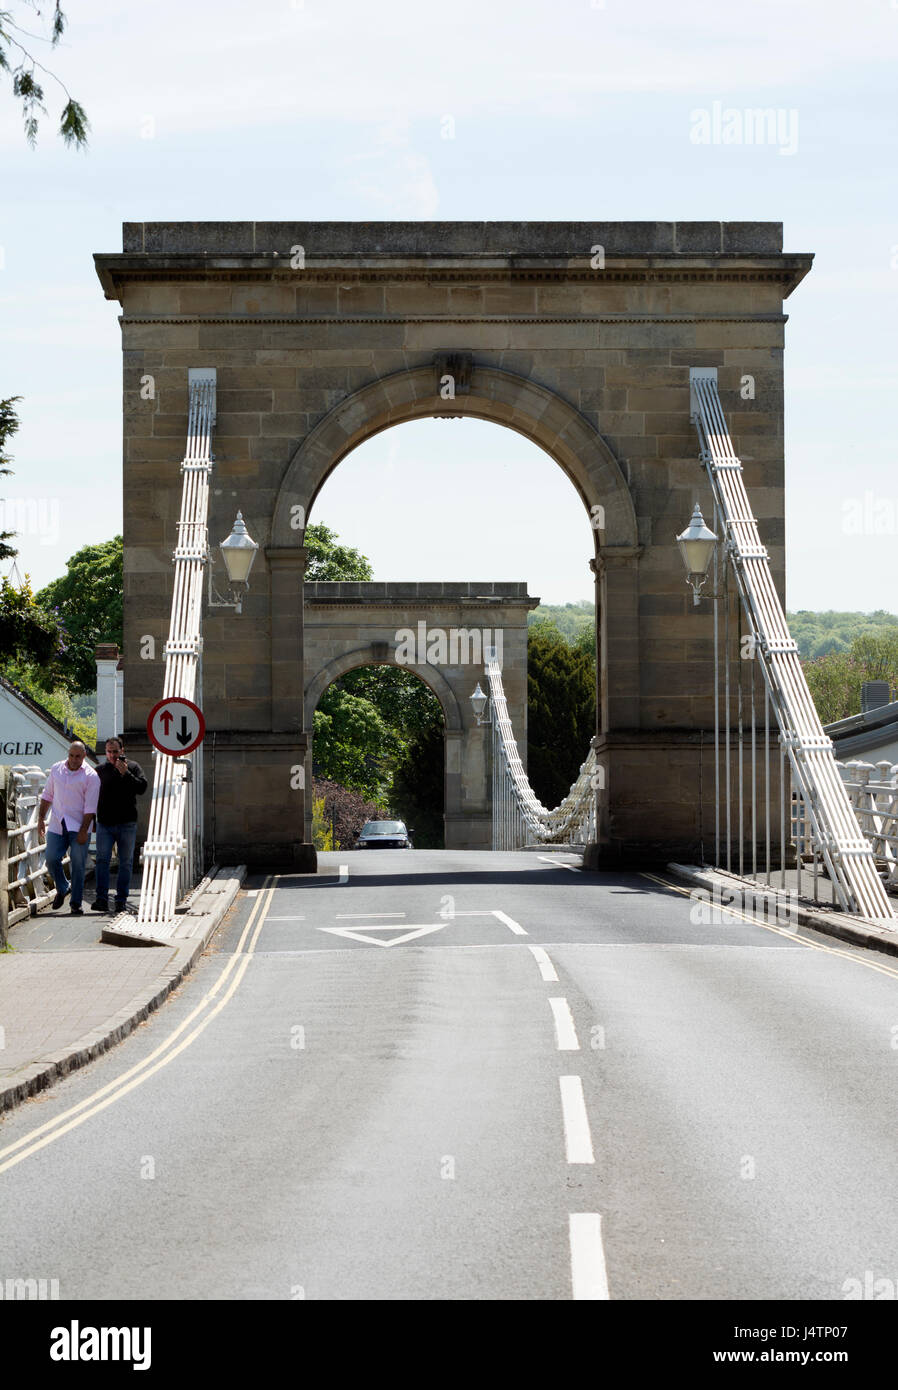 Le pont suspendu au-dessus de la Tamise, Marlow, Buckinghamshire, England, UK Banque D'Images